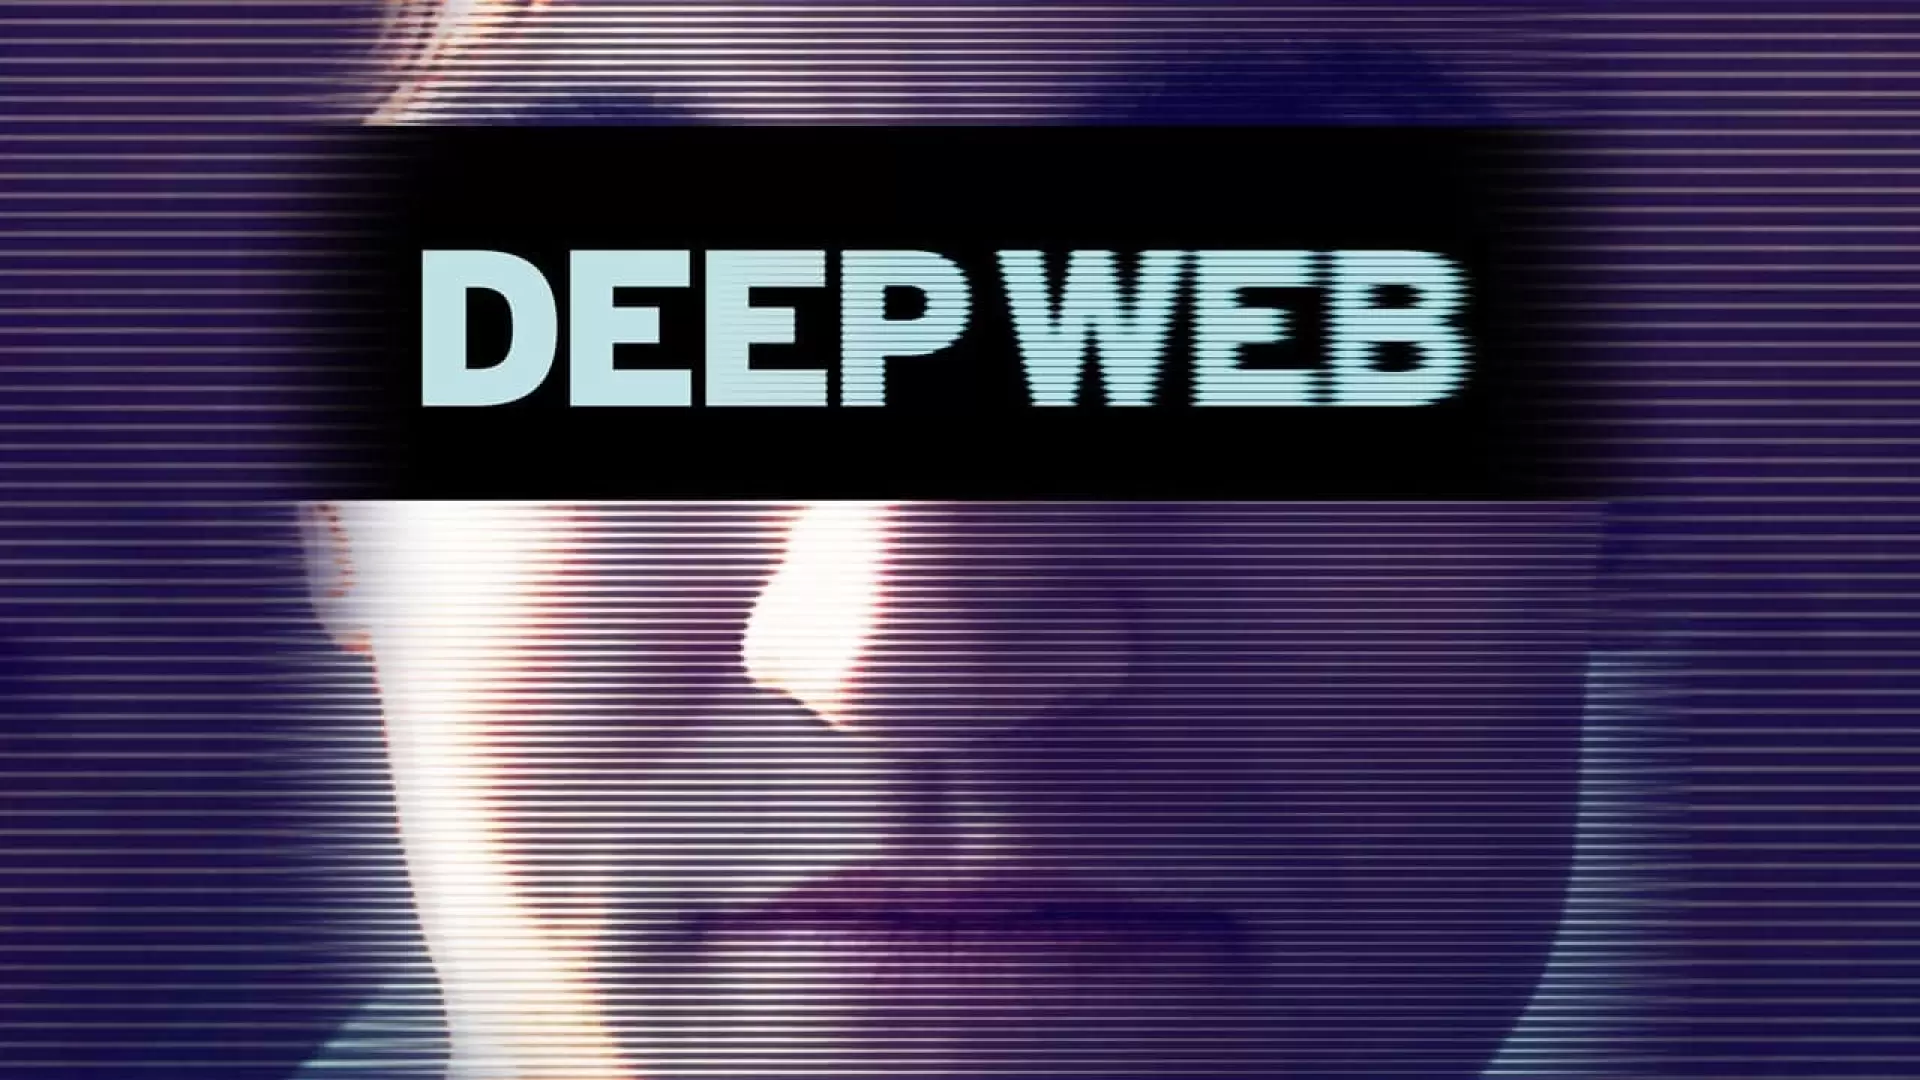 دانلود مستند Deep Web 2015 (دیپ وب) با زیرنویس فارسی و تماشای آنلاین